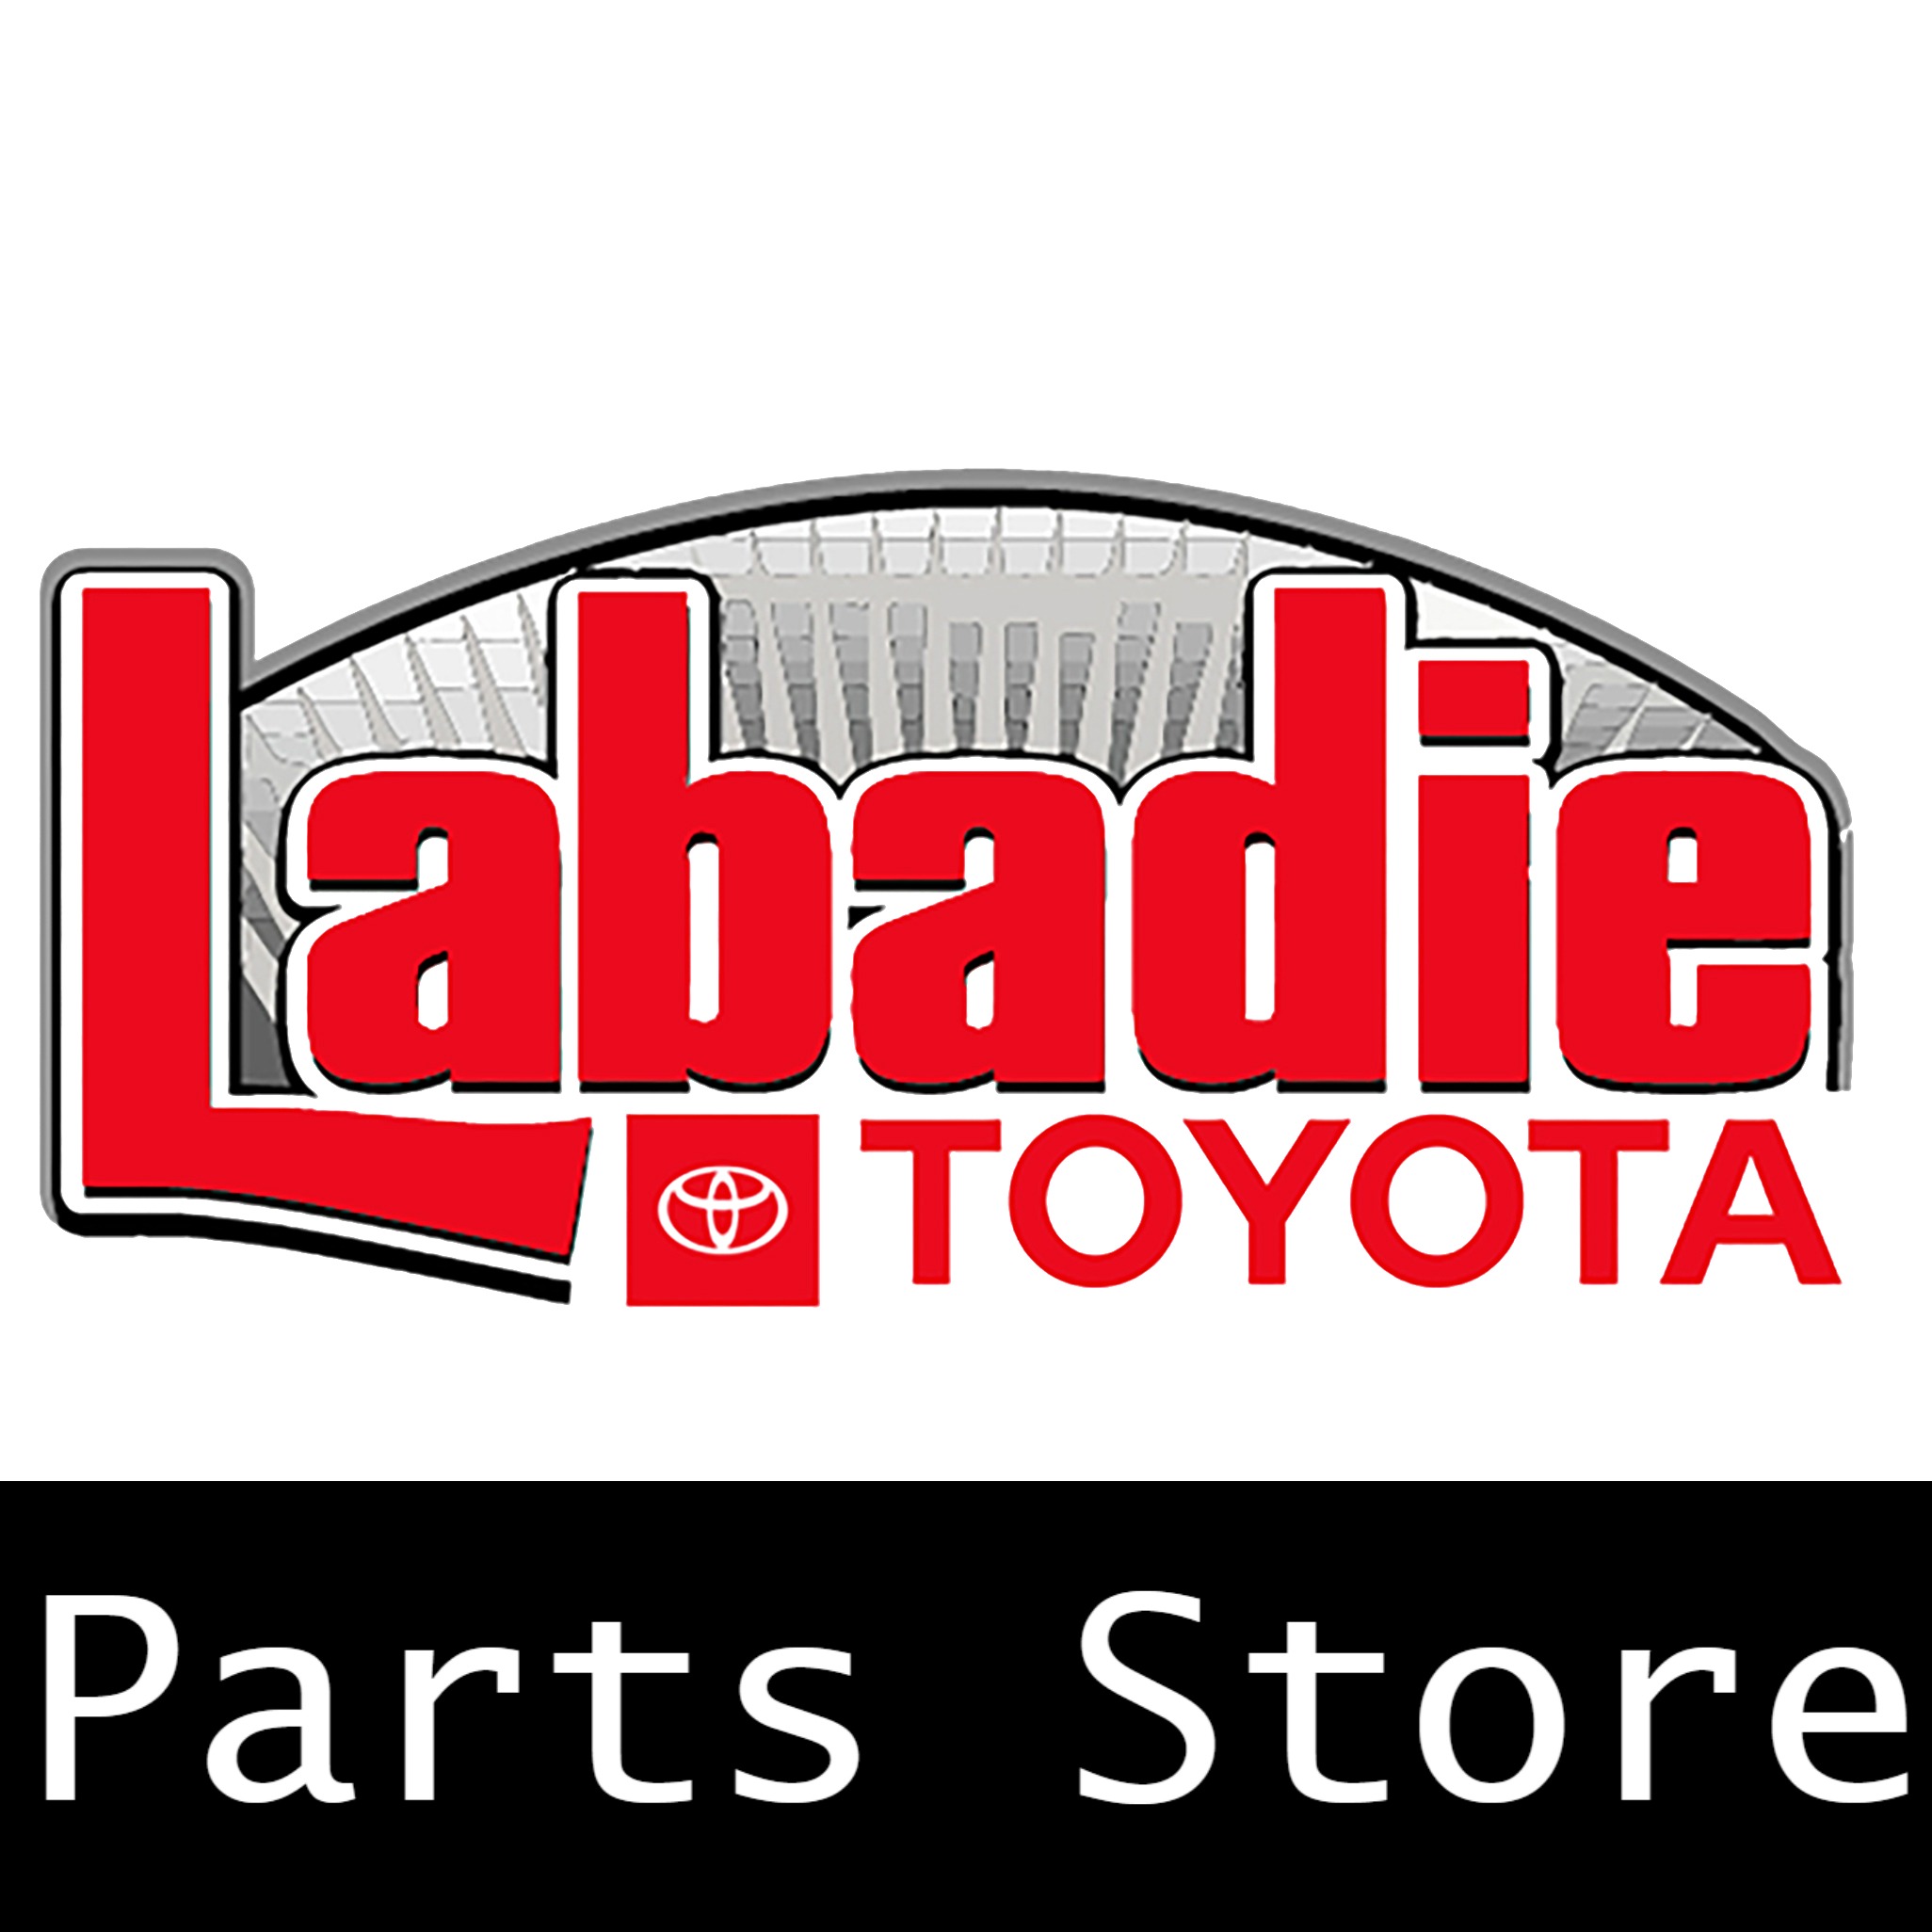 Labadie Toyota Parts Logo